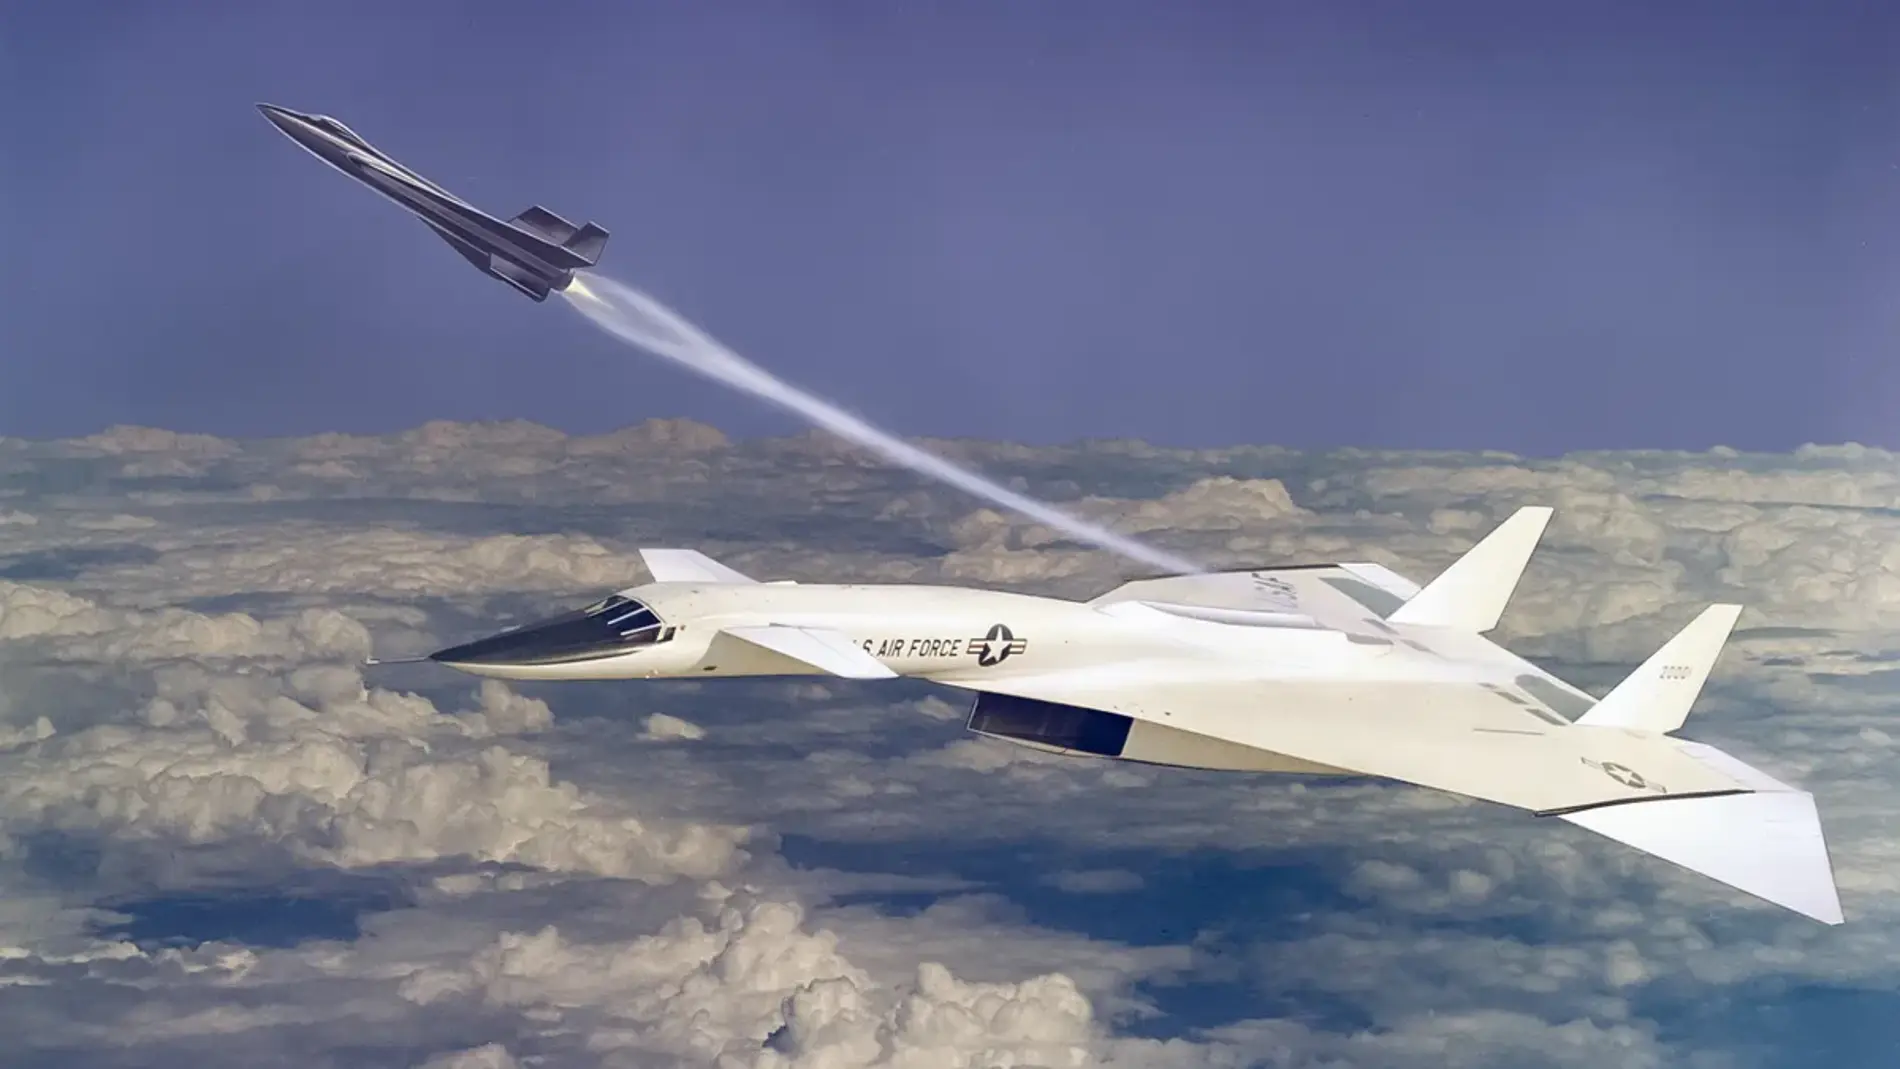 Este caza supersónico podía alcanzar velocidades de Mach-3 con una altitud de hasta 70.000 pies